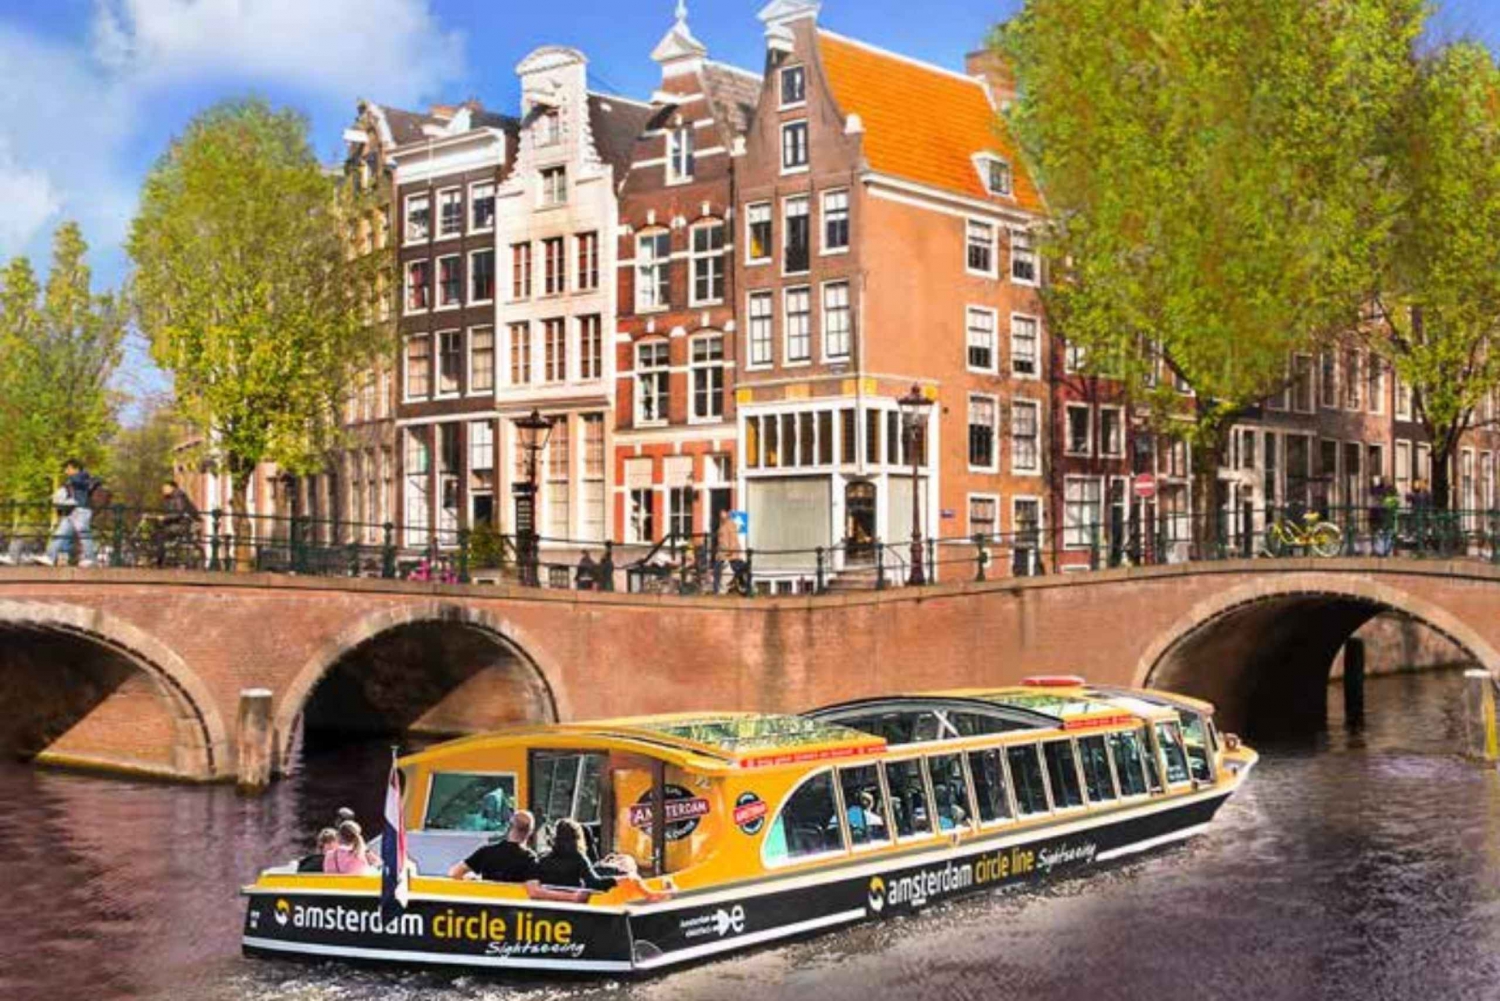 Amsterdam Pizza Cruise - En fusion af mad og sightseeing